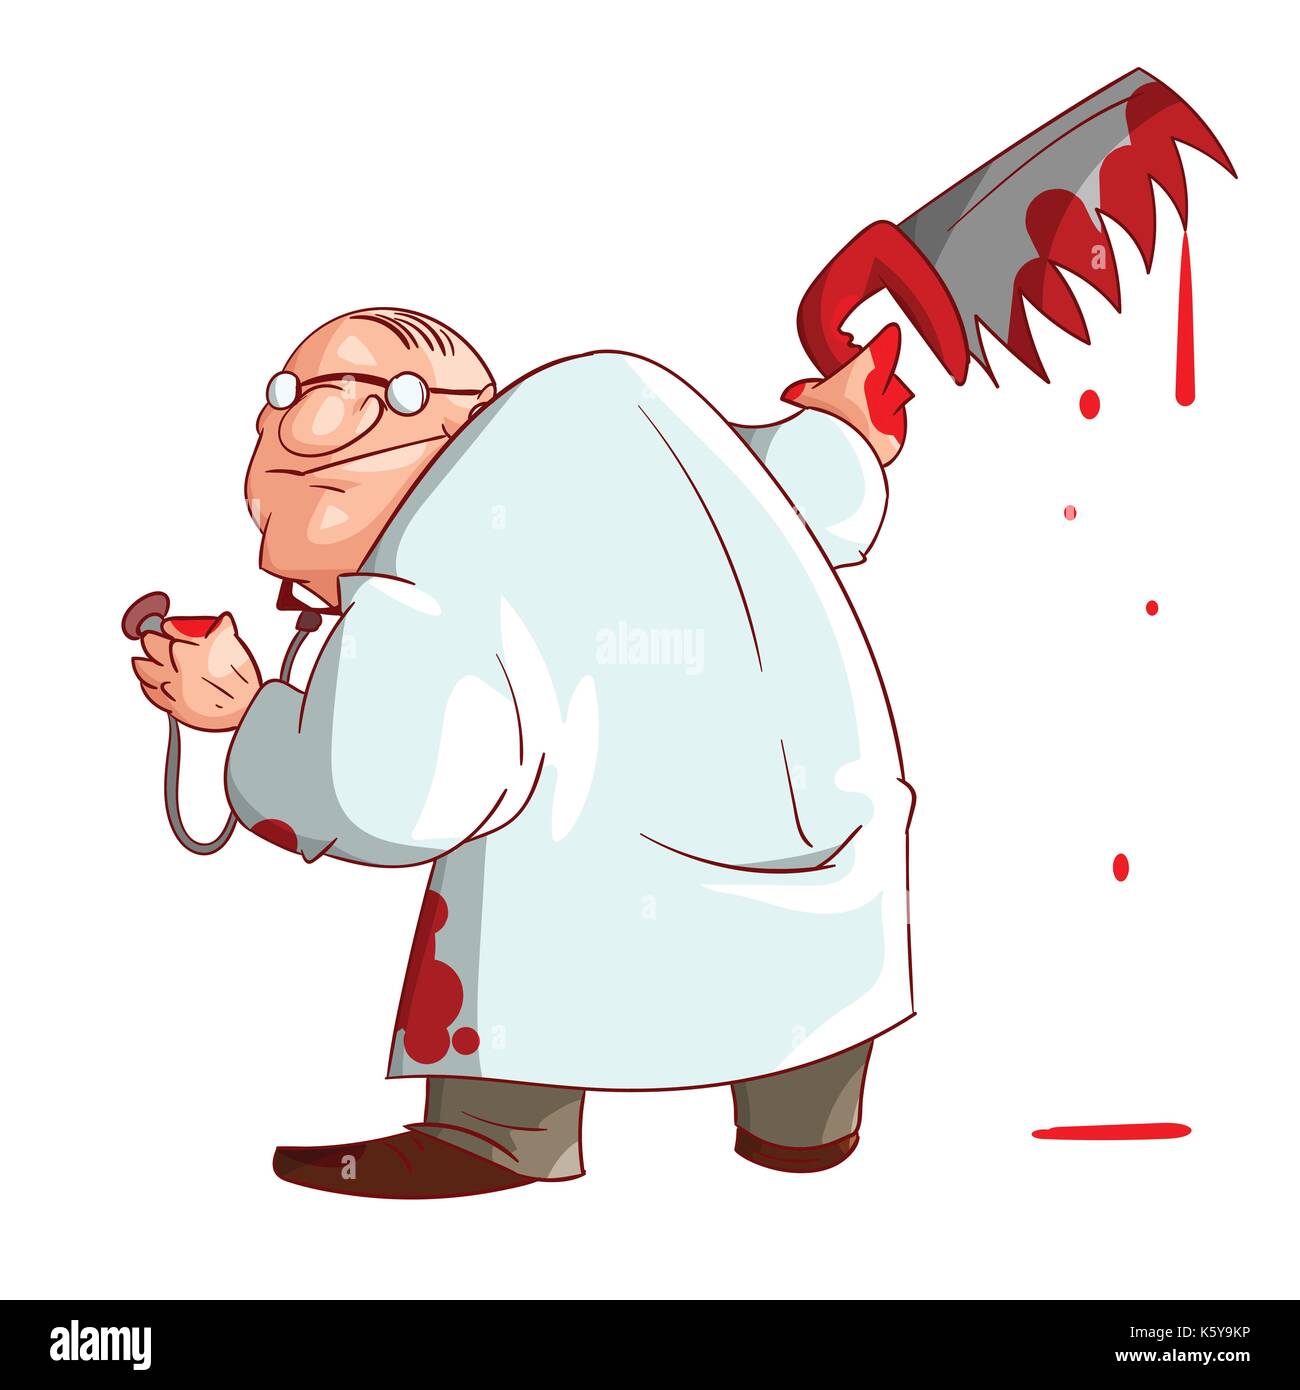 Colorata illustrazione vettoriale di un cartoon crazy medico, tenendo una sanguinosa sega e macchie di sangue sui suoi vestiti e mani Illustrazione Vettoriale